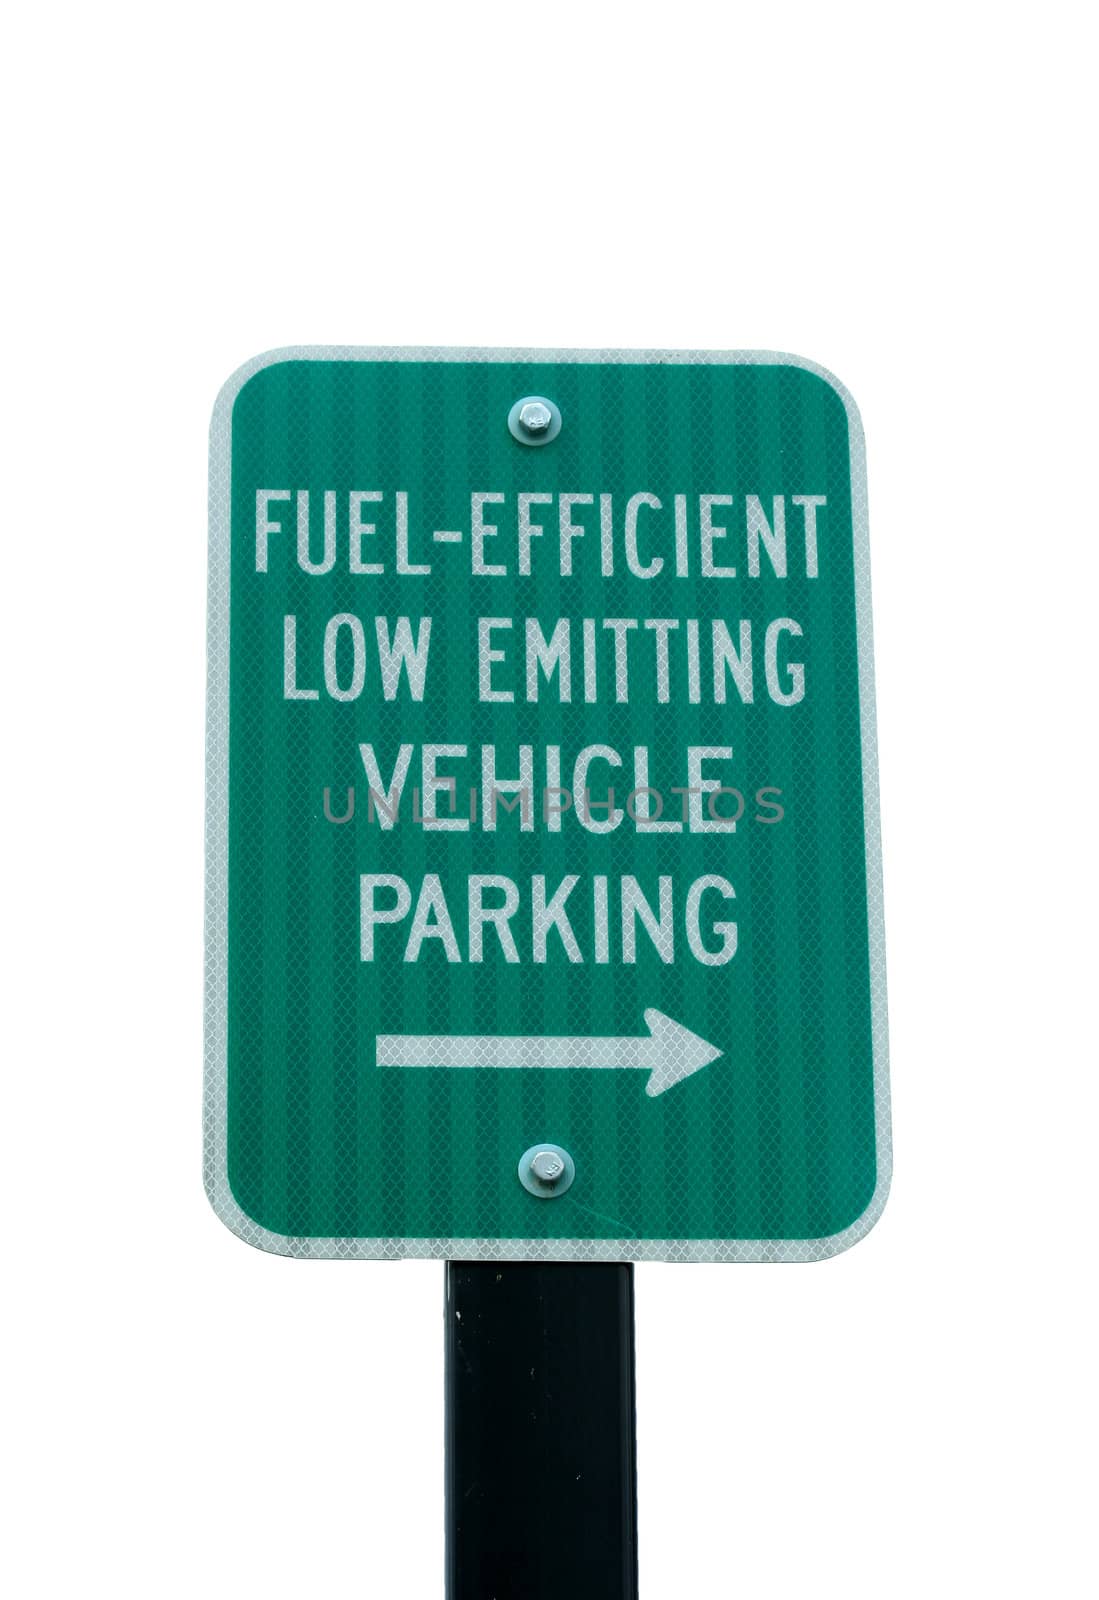 A Fuel Efficient parking sign image